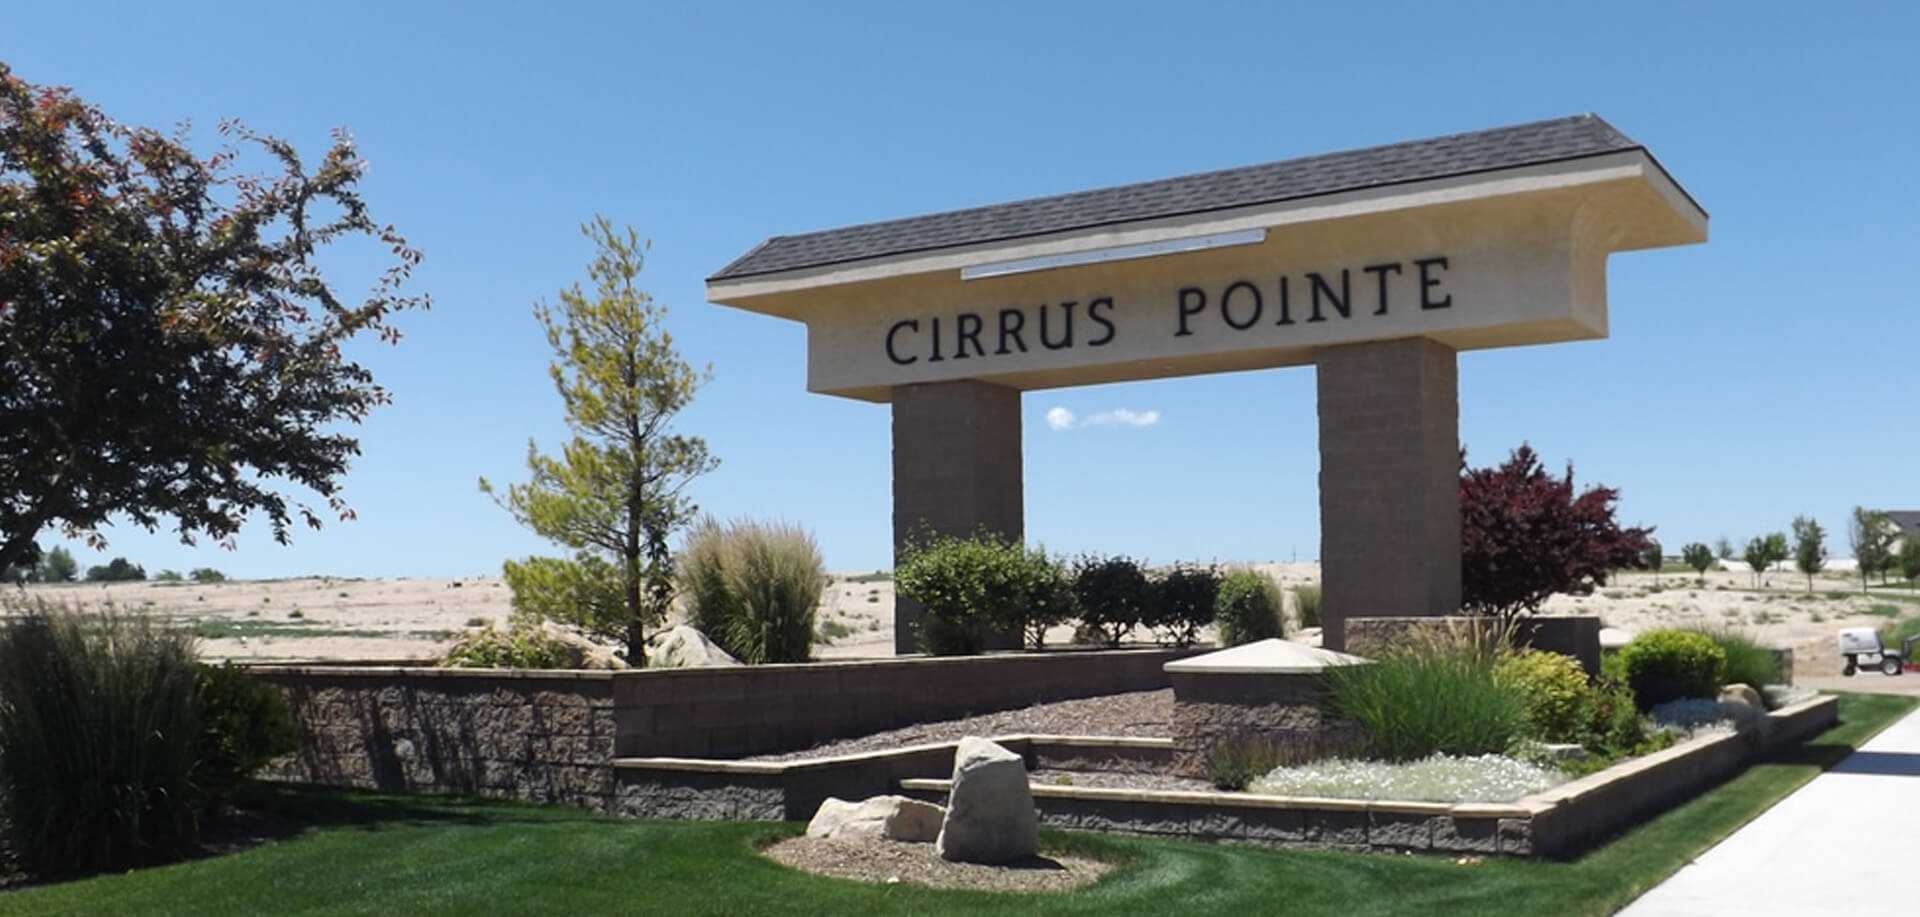 Cirrus Point Caldwell Idaho